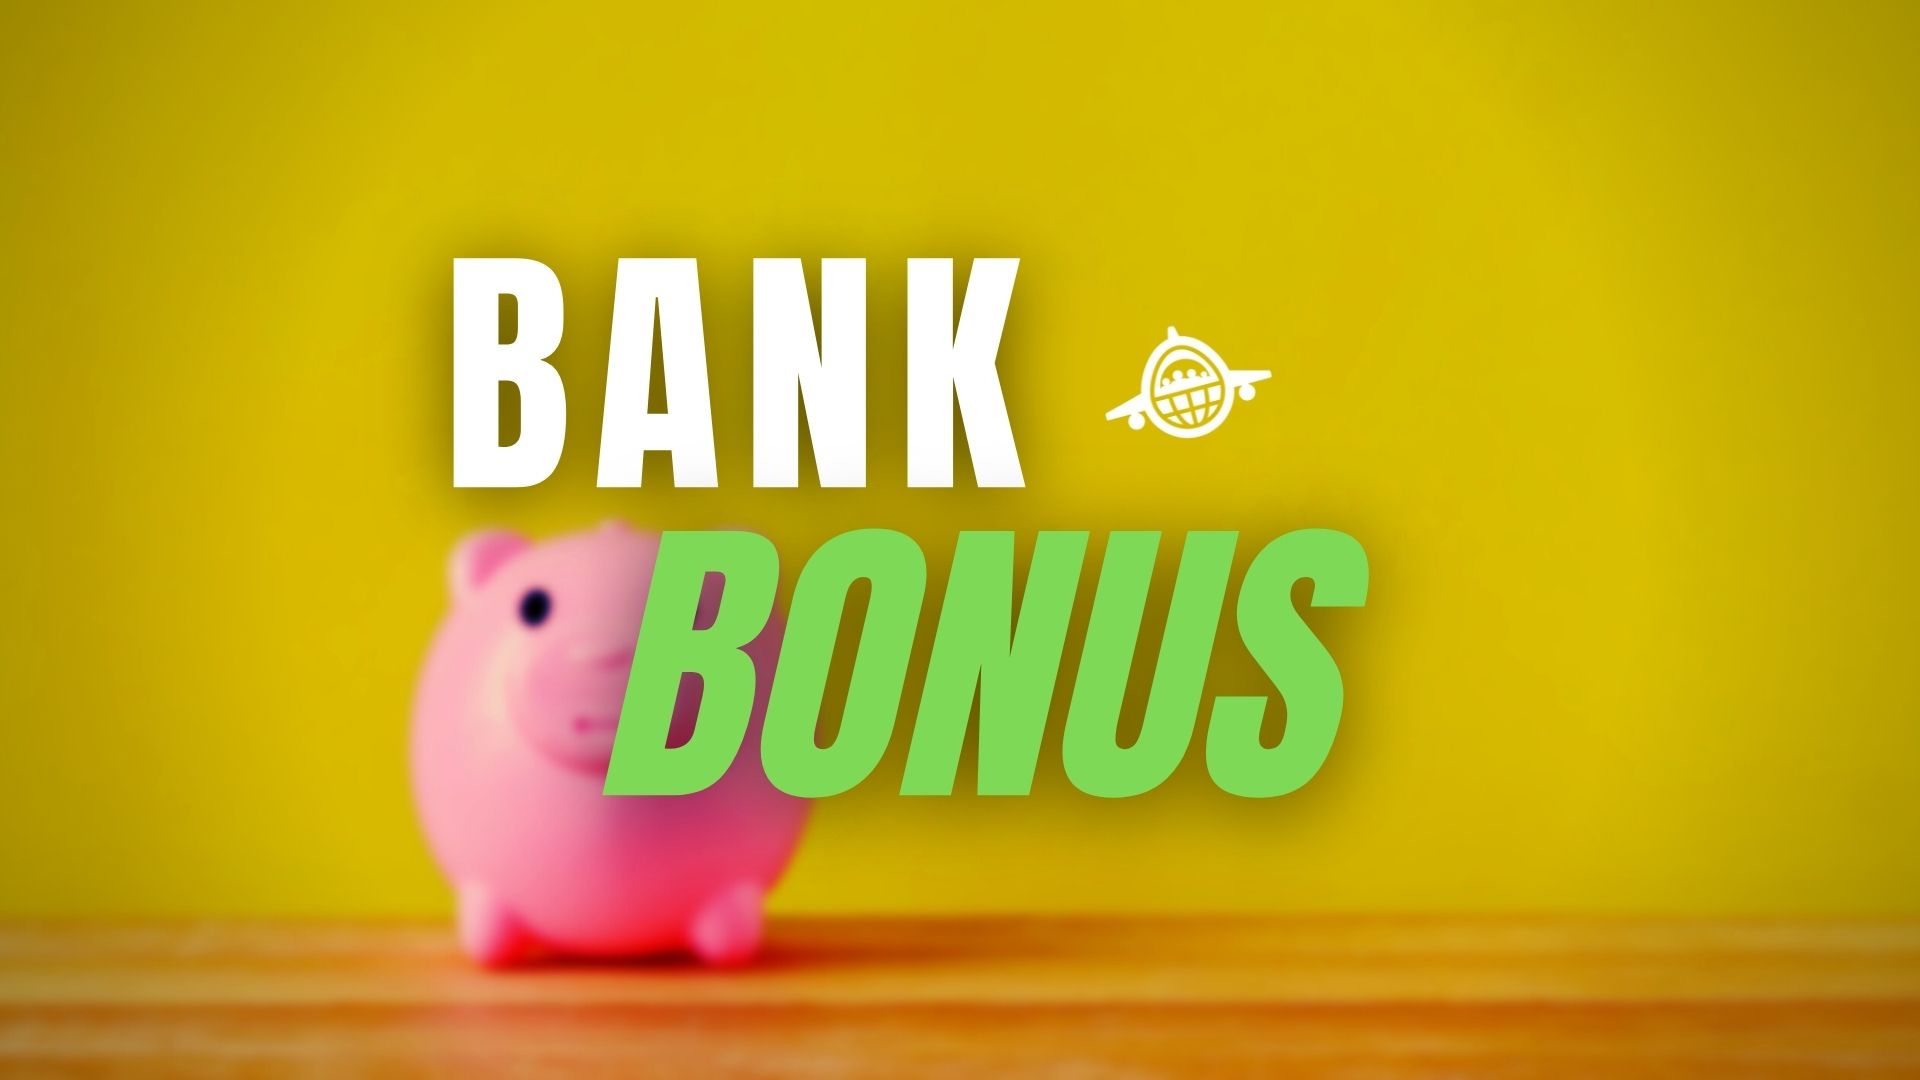 Chase $600 Bonus for Checking and Savings